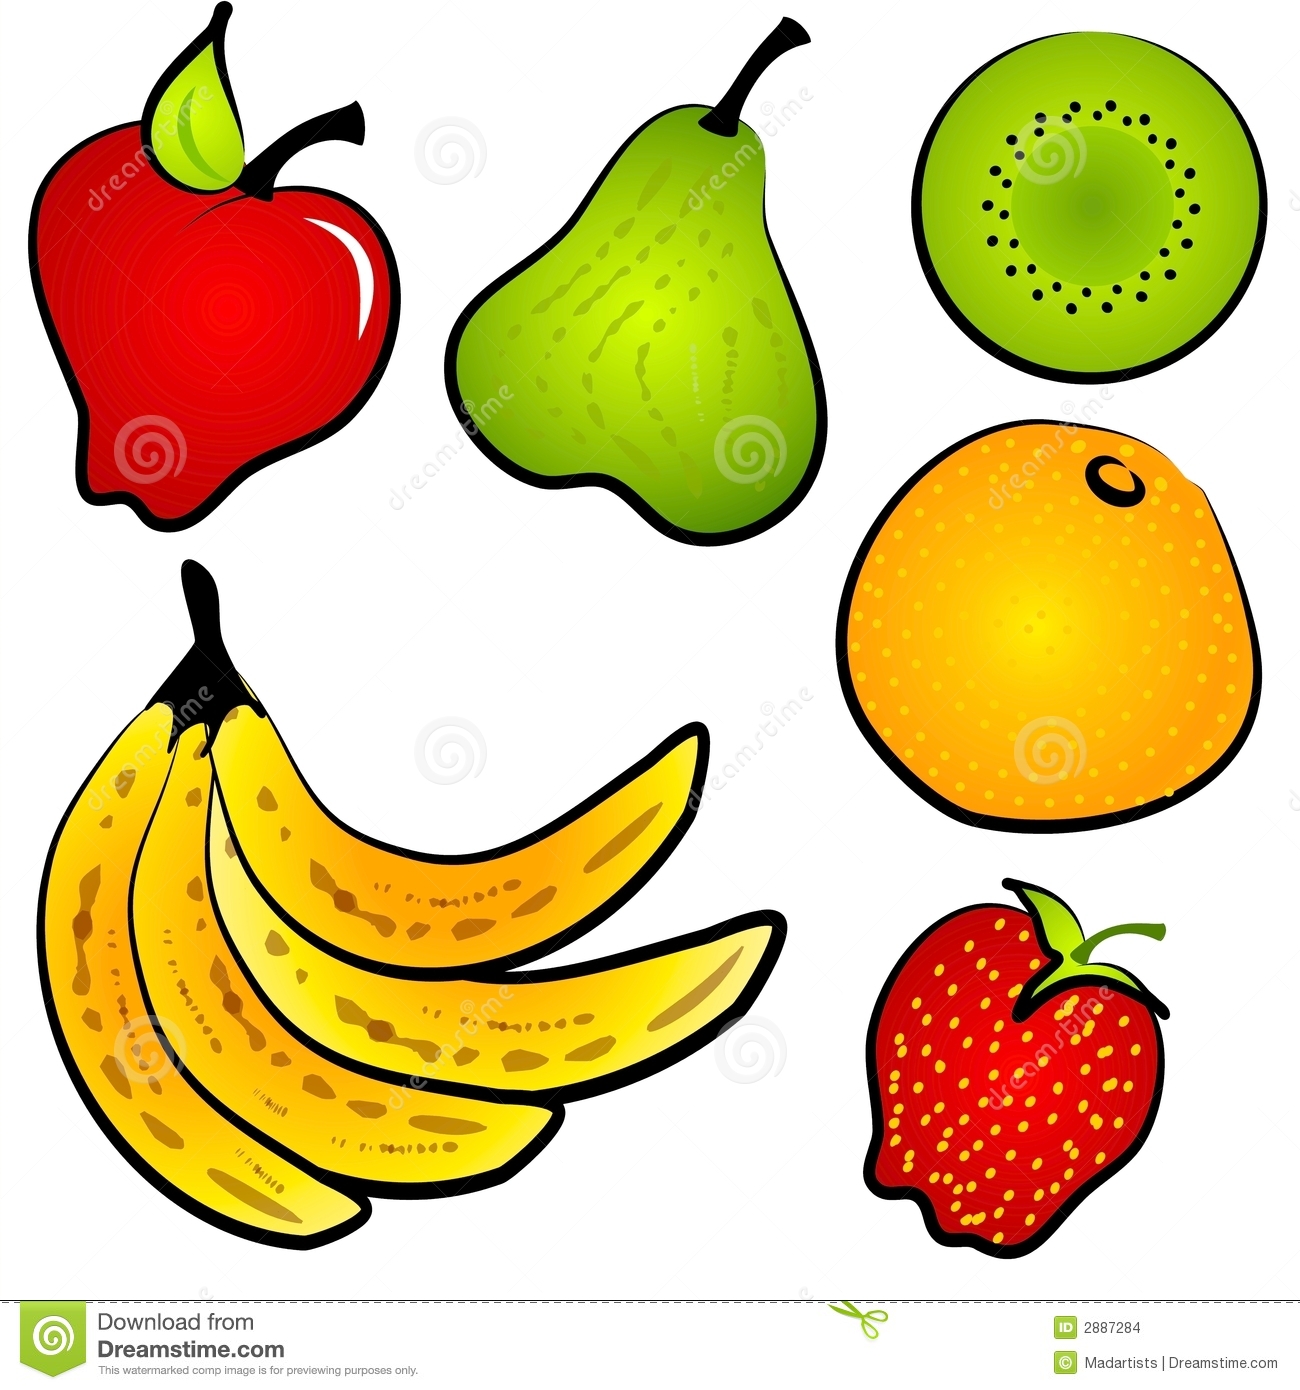 Clipart Images Graphiques De Fruit De Nourriture De Healty Images